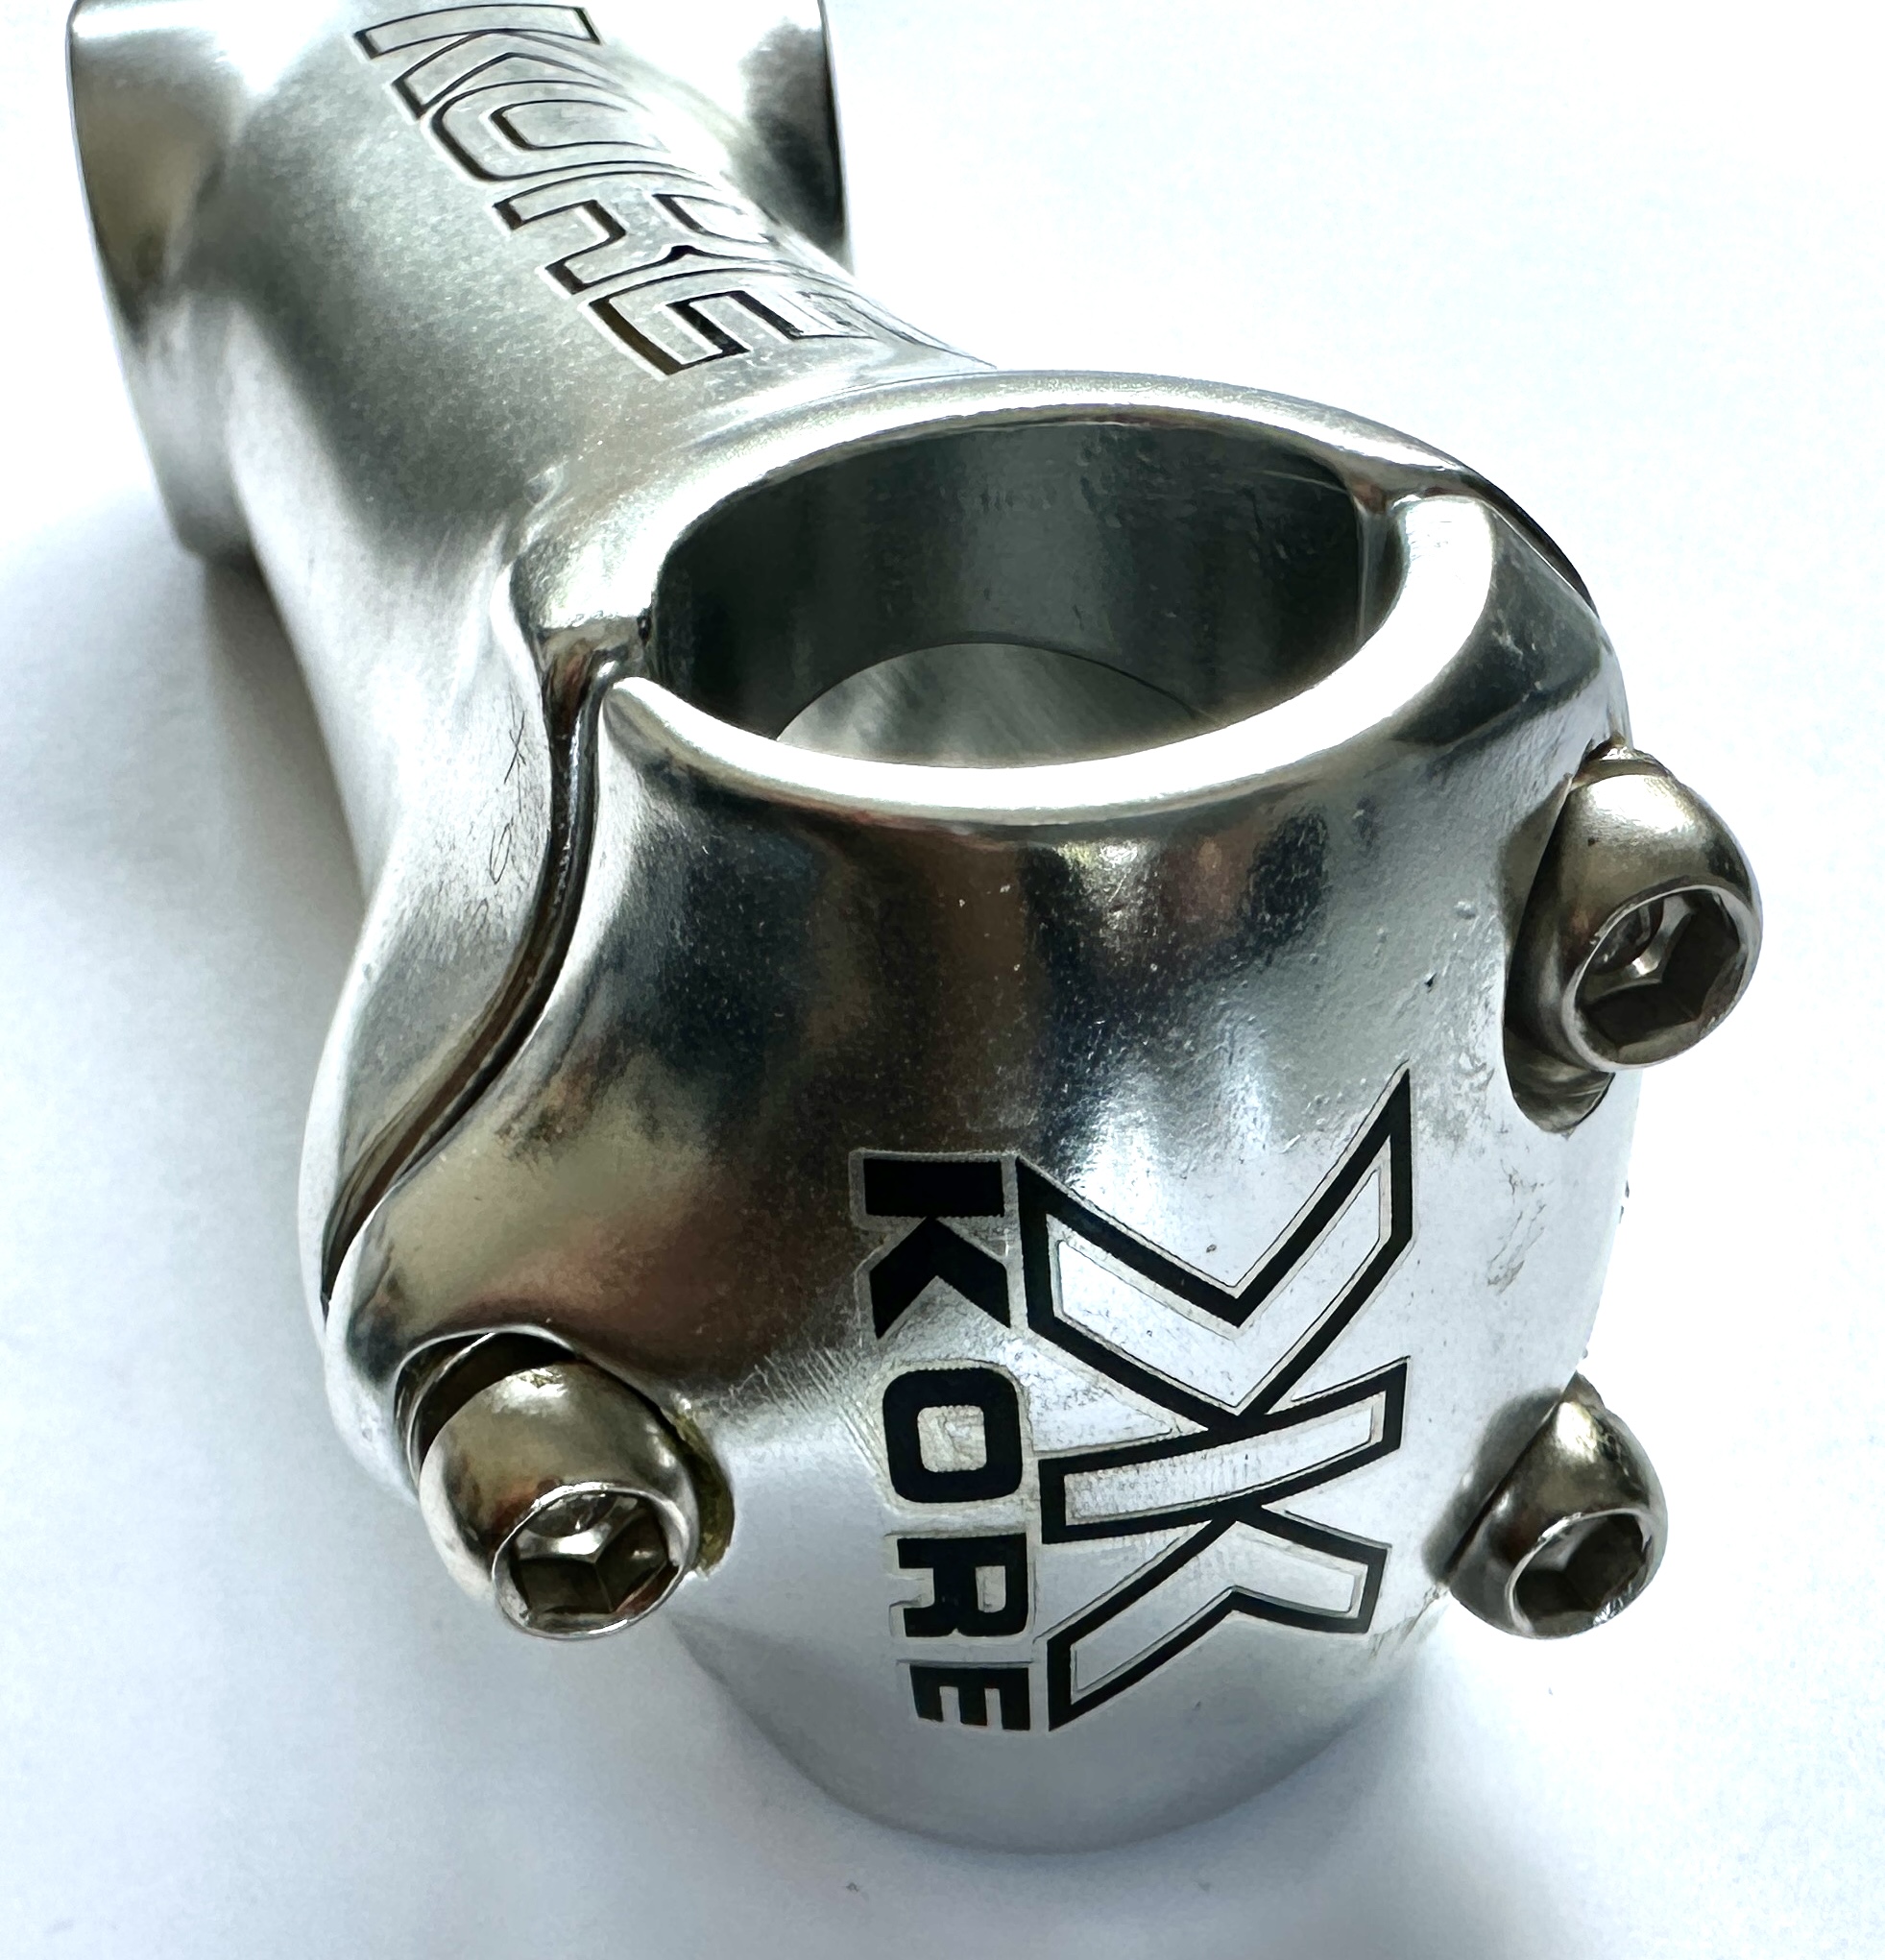 Kore Potencia Potencia de aluminio: montaje en manillar de 1 1/8 1 pulgada Conexión de tornillo de 4 vías